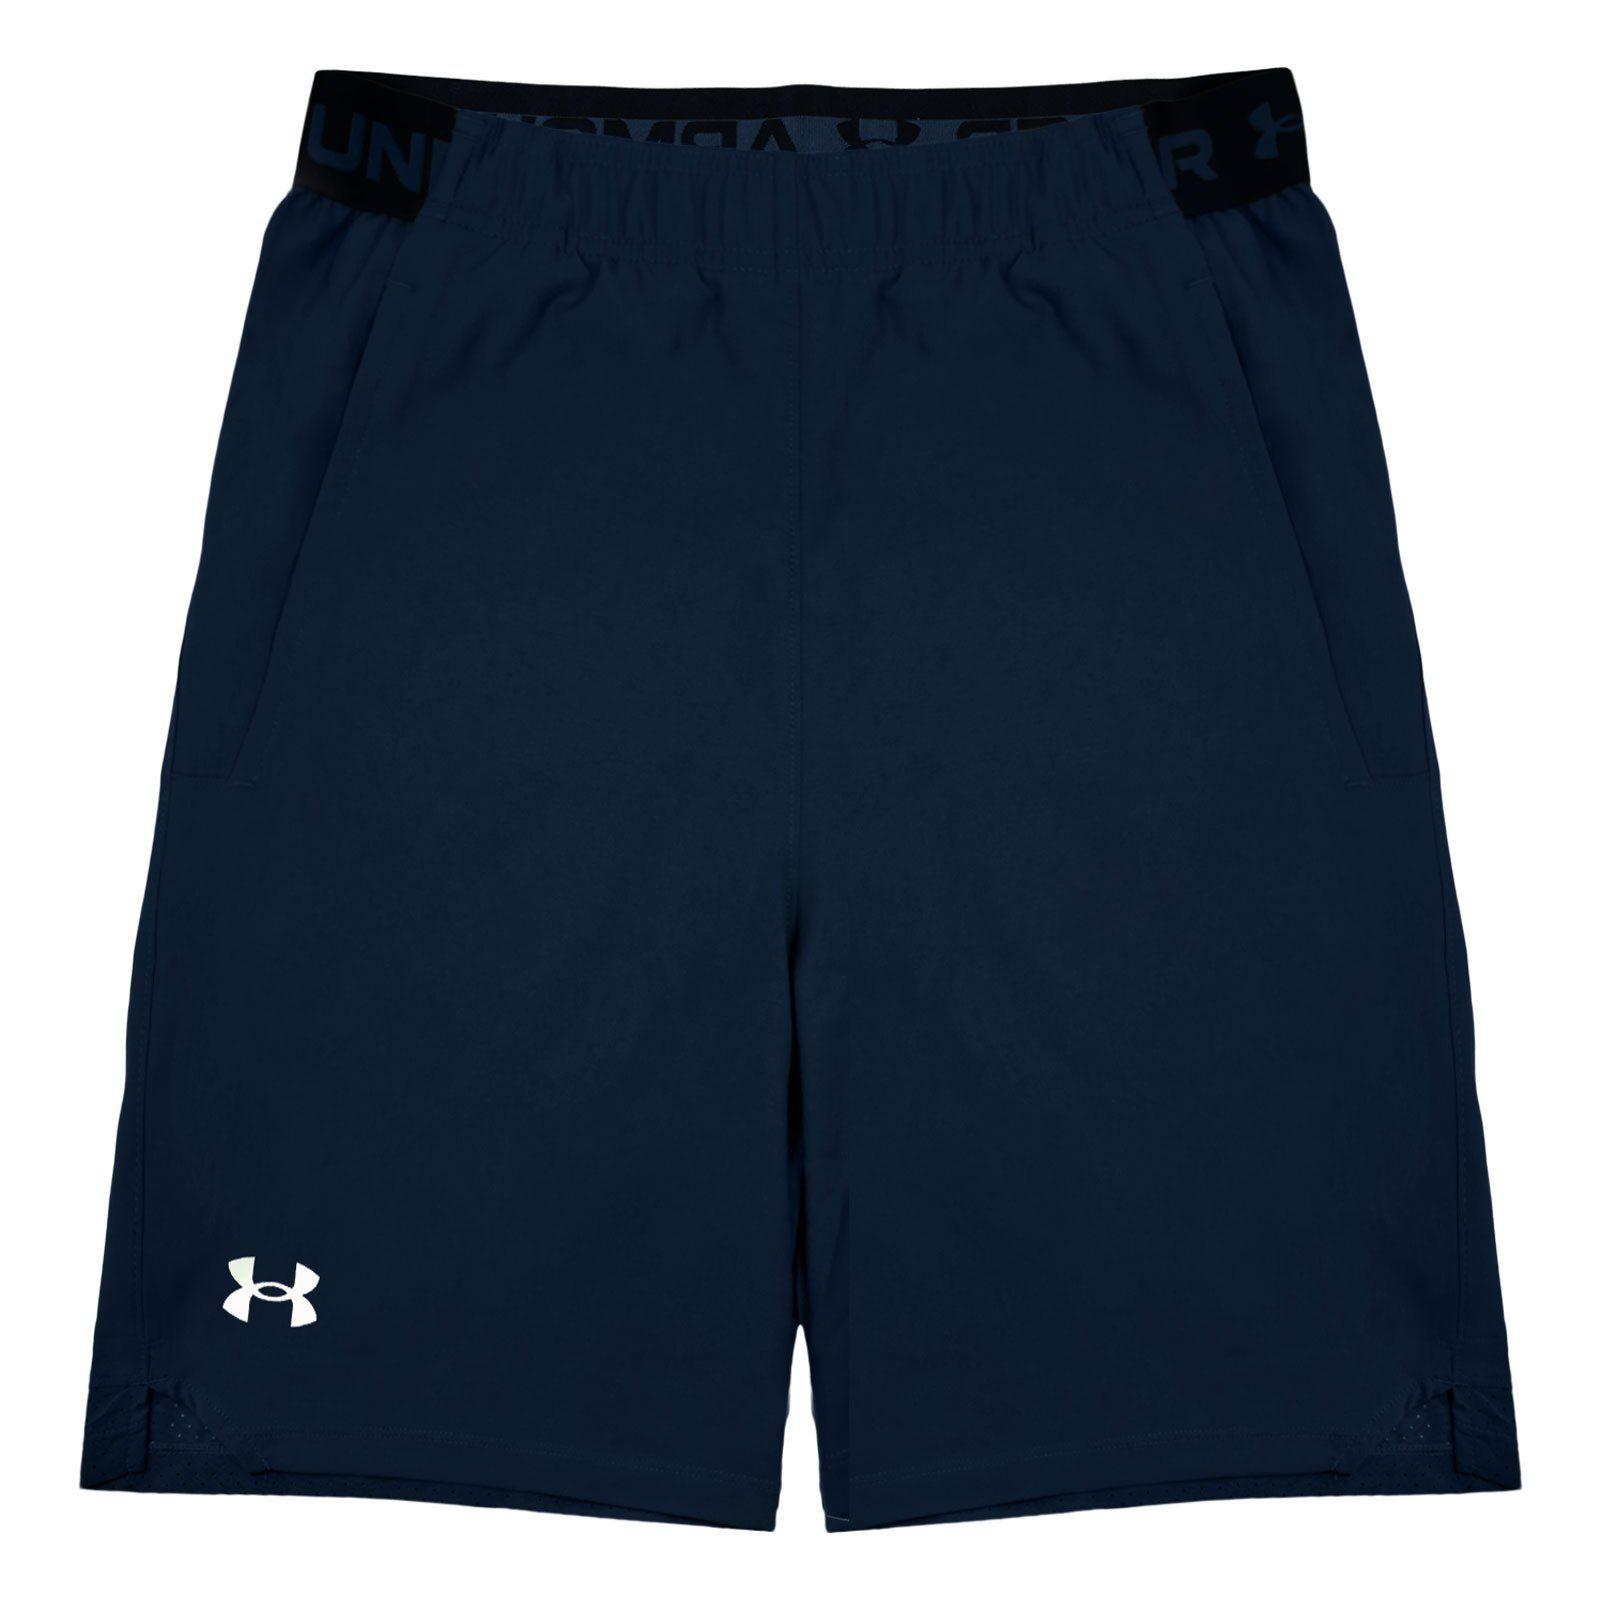 Under Armour® Shorts Vanish Woven 6in Shorts mit innenliegendem Zugband